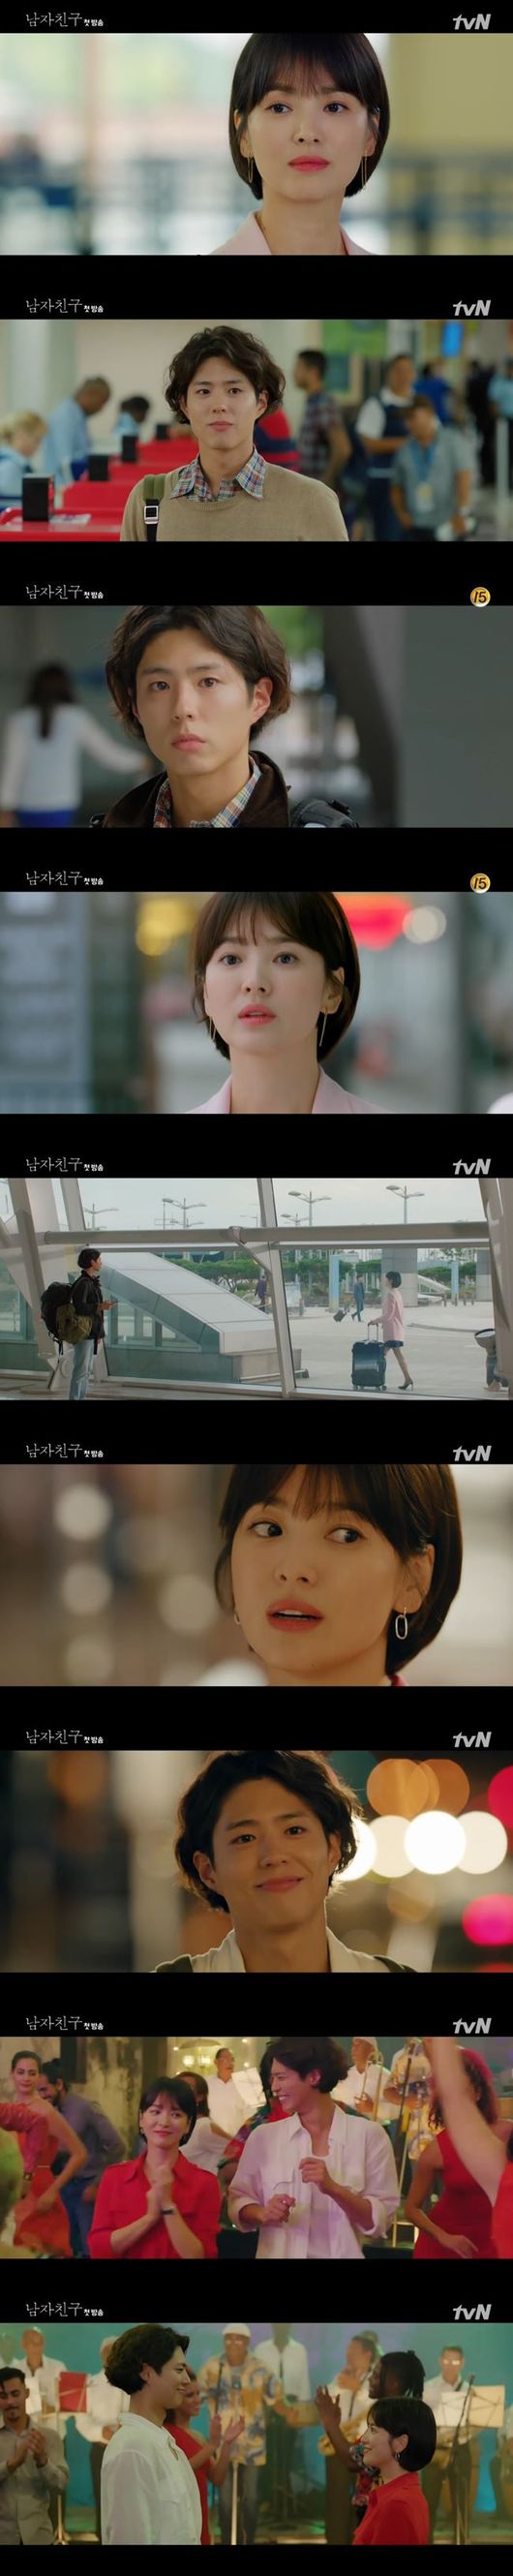 Song Hye Kyo,Park Bo Gum,Encounter